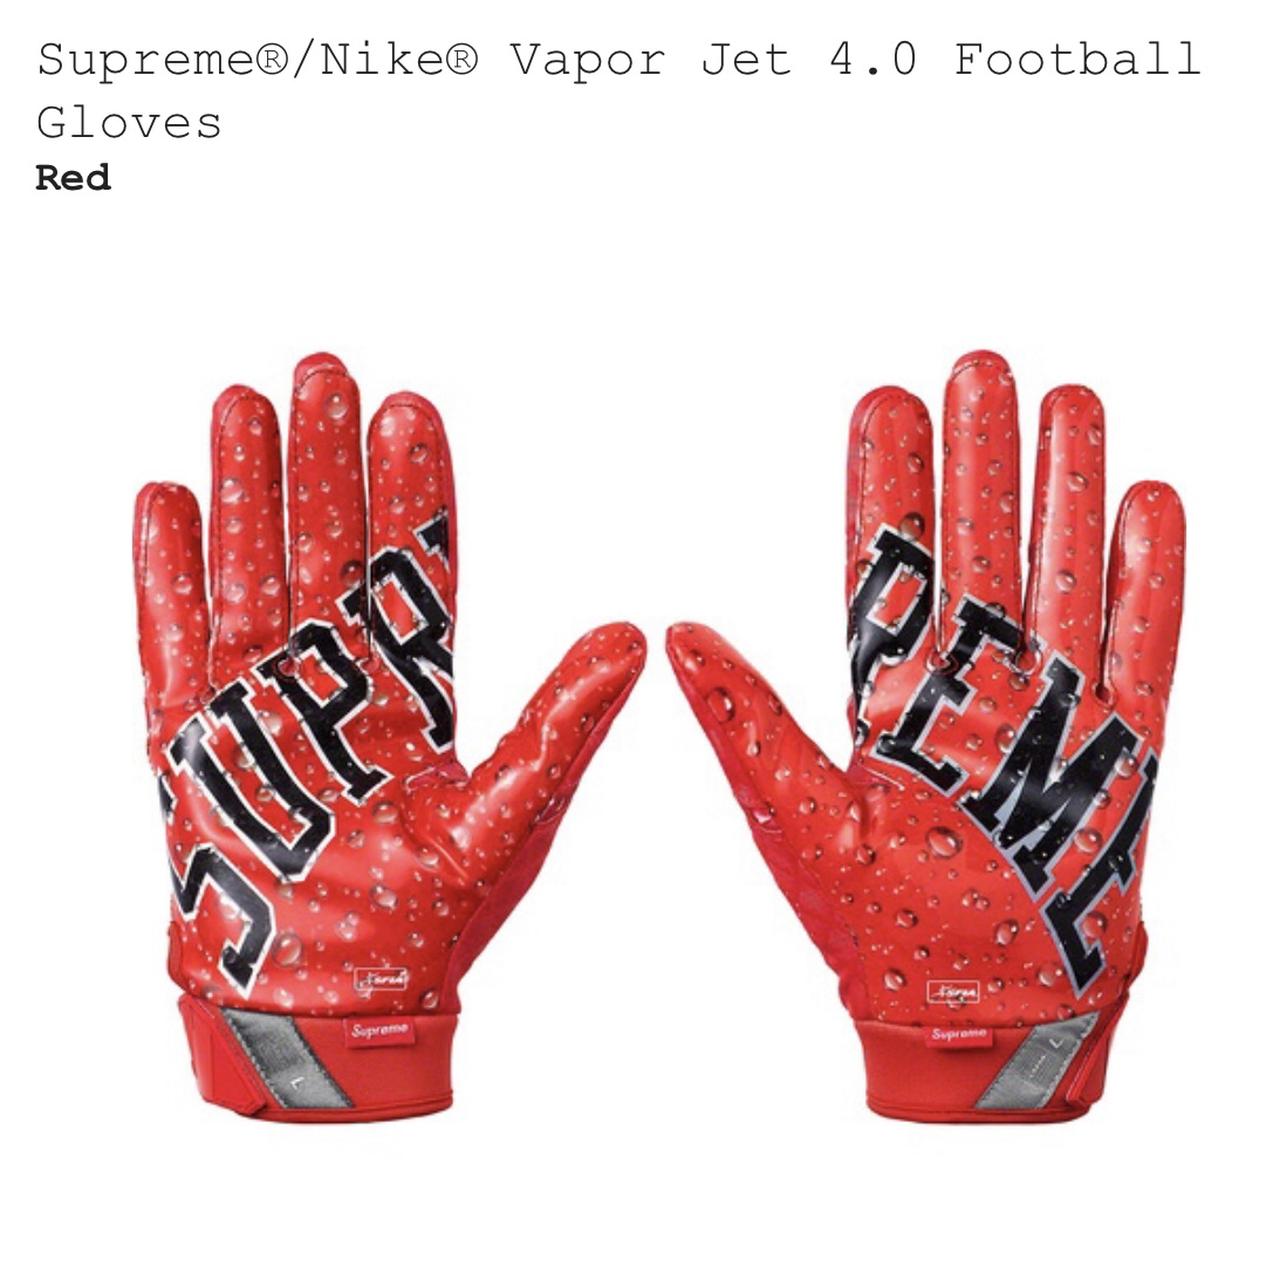 bus fort Rekwisieten Supreme Nike Vapor Jet 4.0 Football Gloves. 100%... - Depop